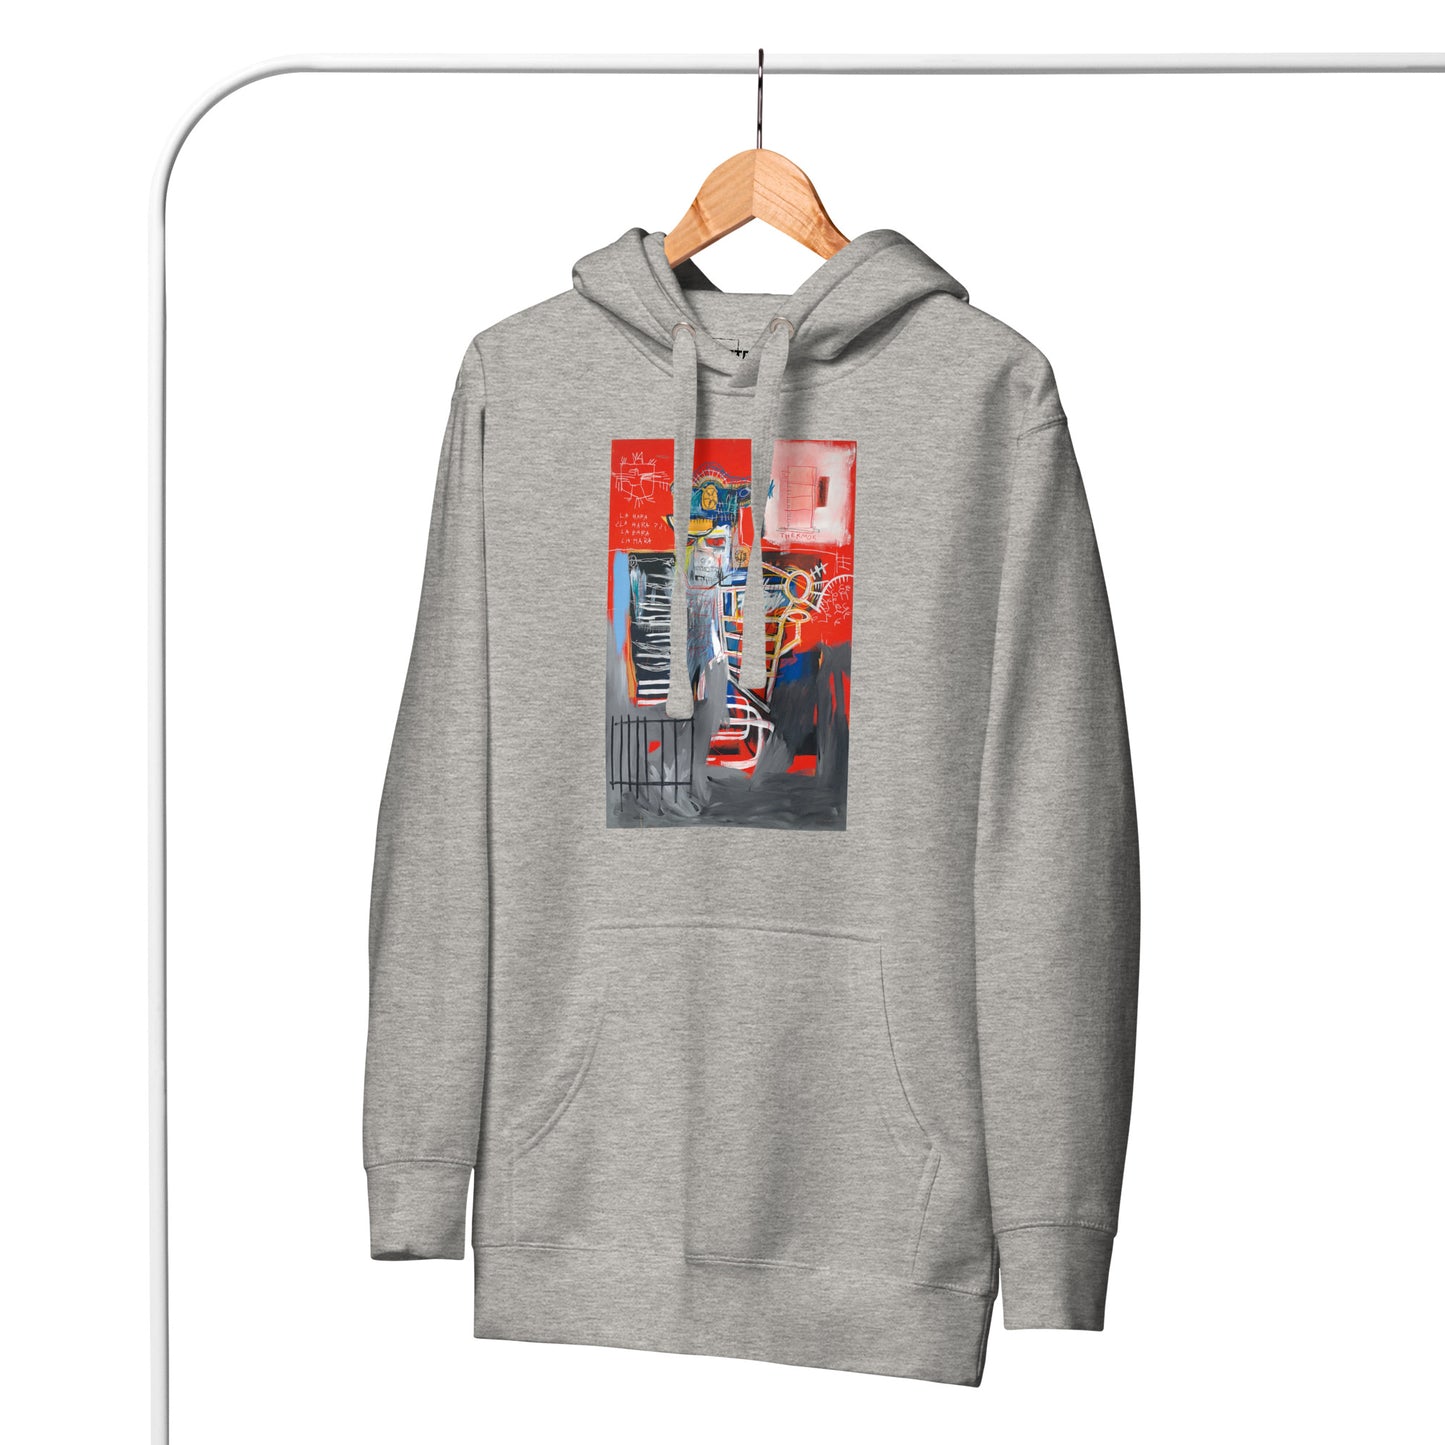 Jean-Michel Basquiat "La Hara" Artwork Printed Premium Streetwear Sweatshirt Hoodie Grey